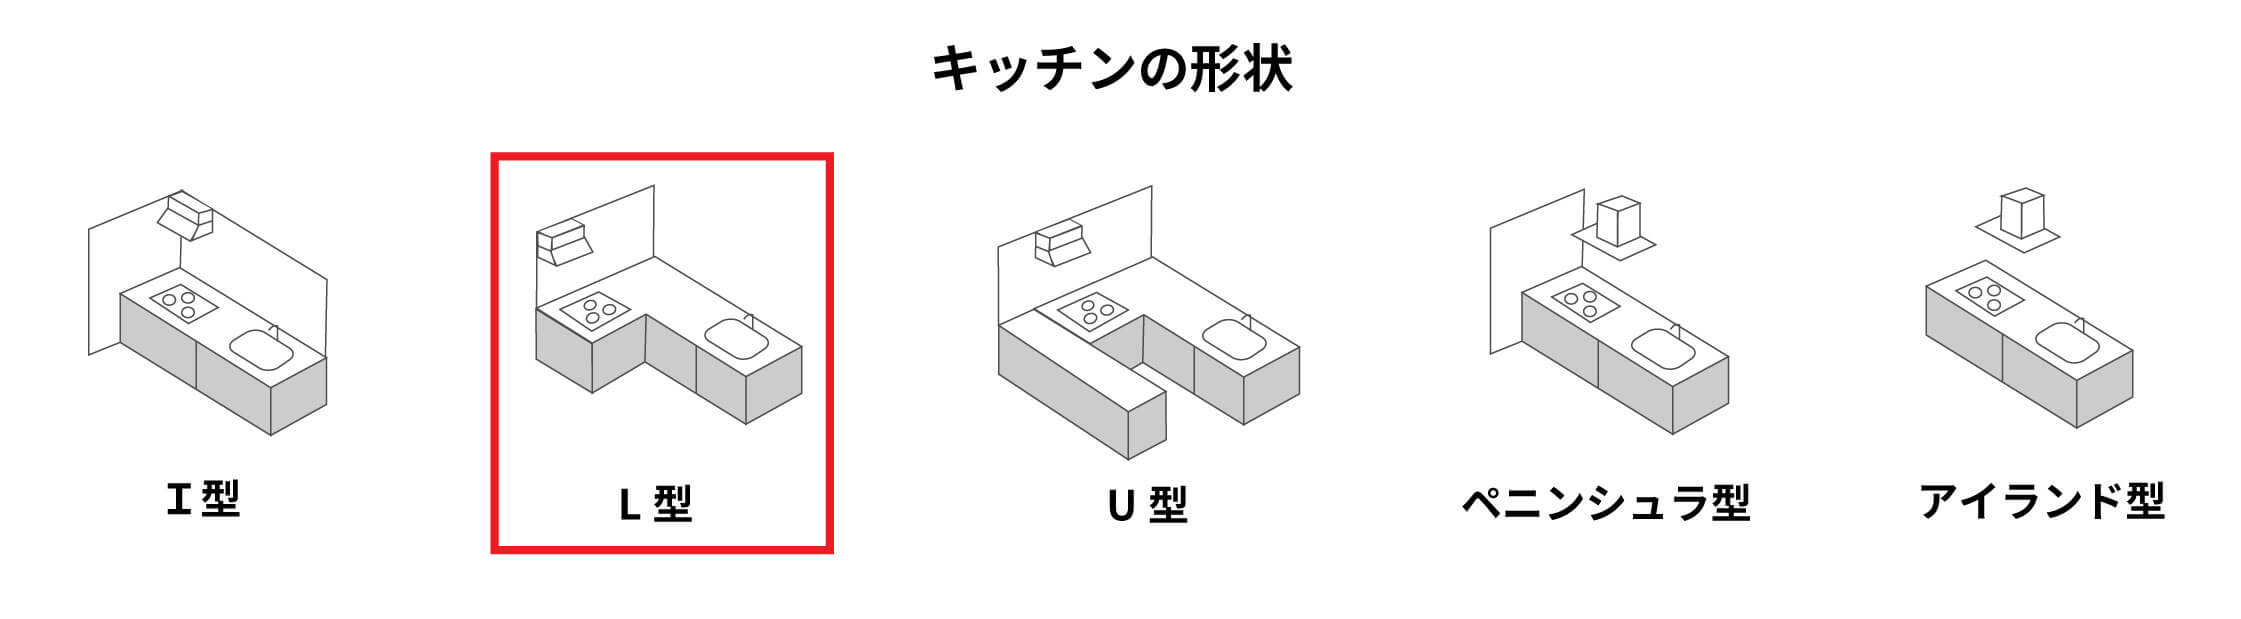 【キッチンの形状】・I型・L型・U型・ペニンシュラ型・アイランド型　5種類の中のL型にマーク